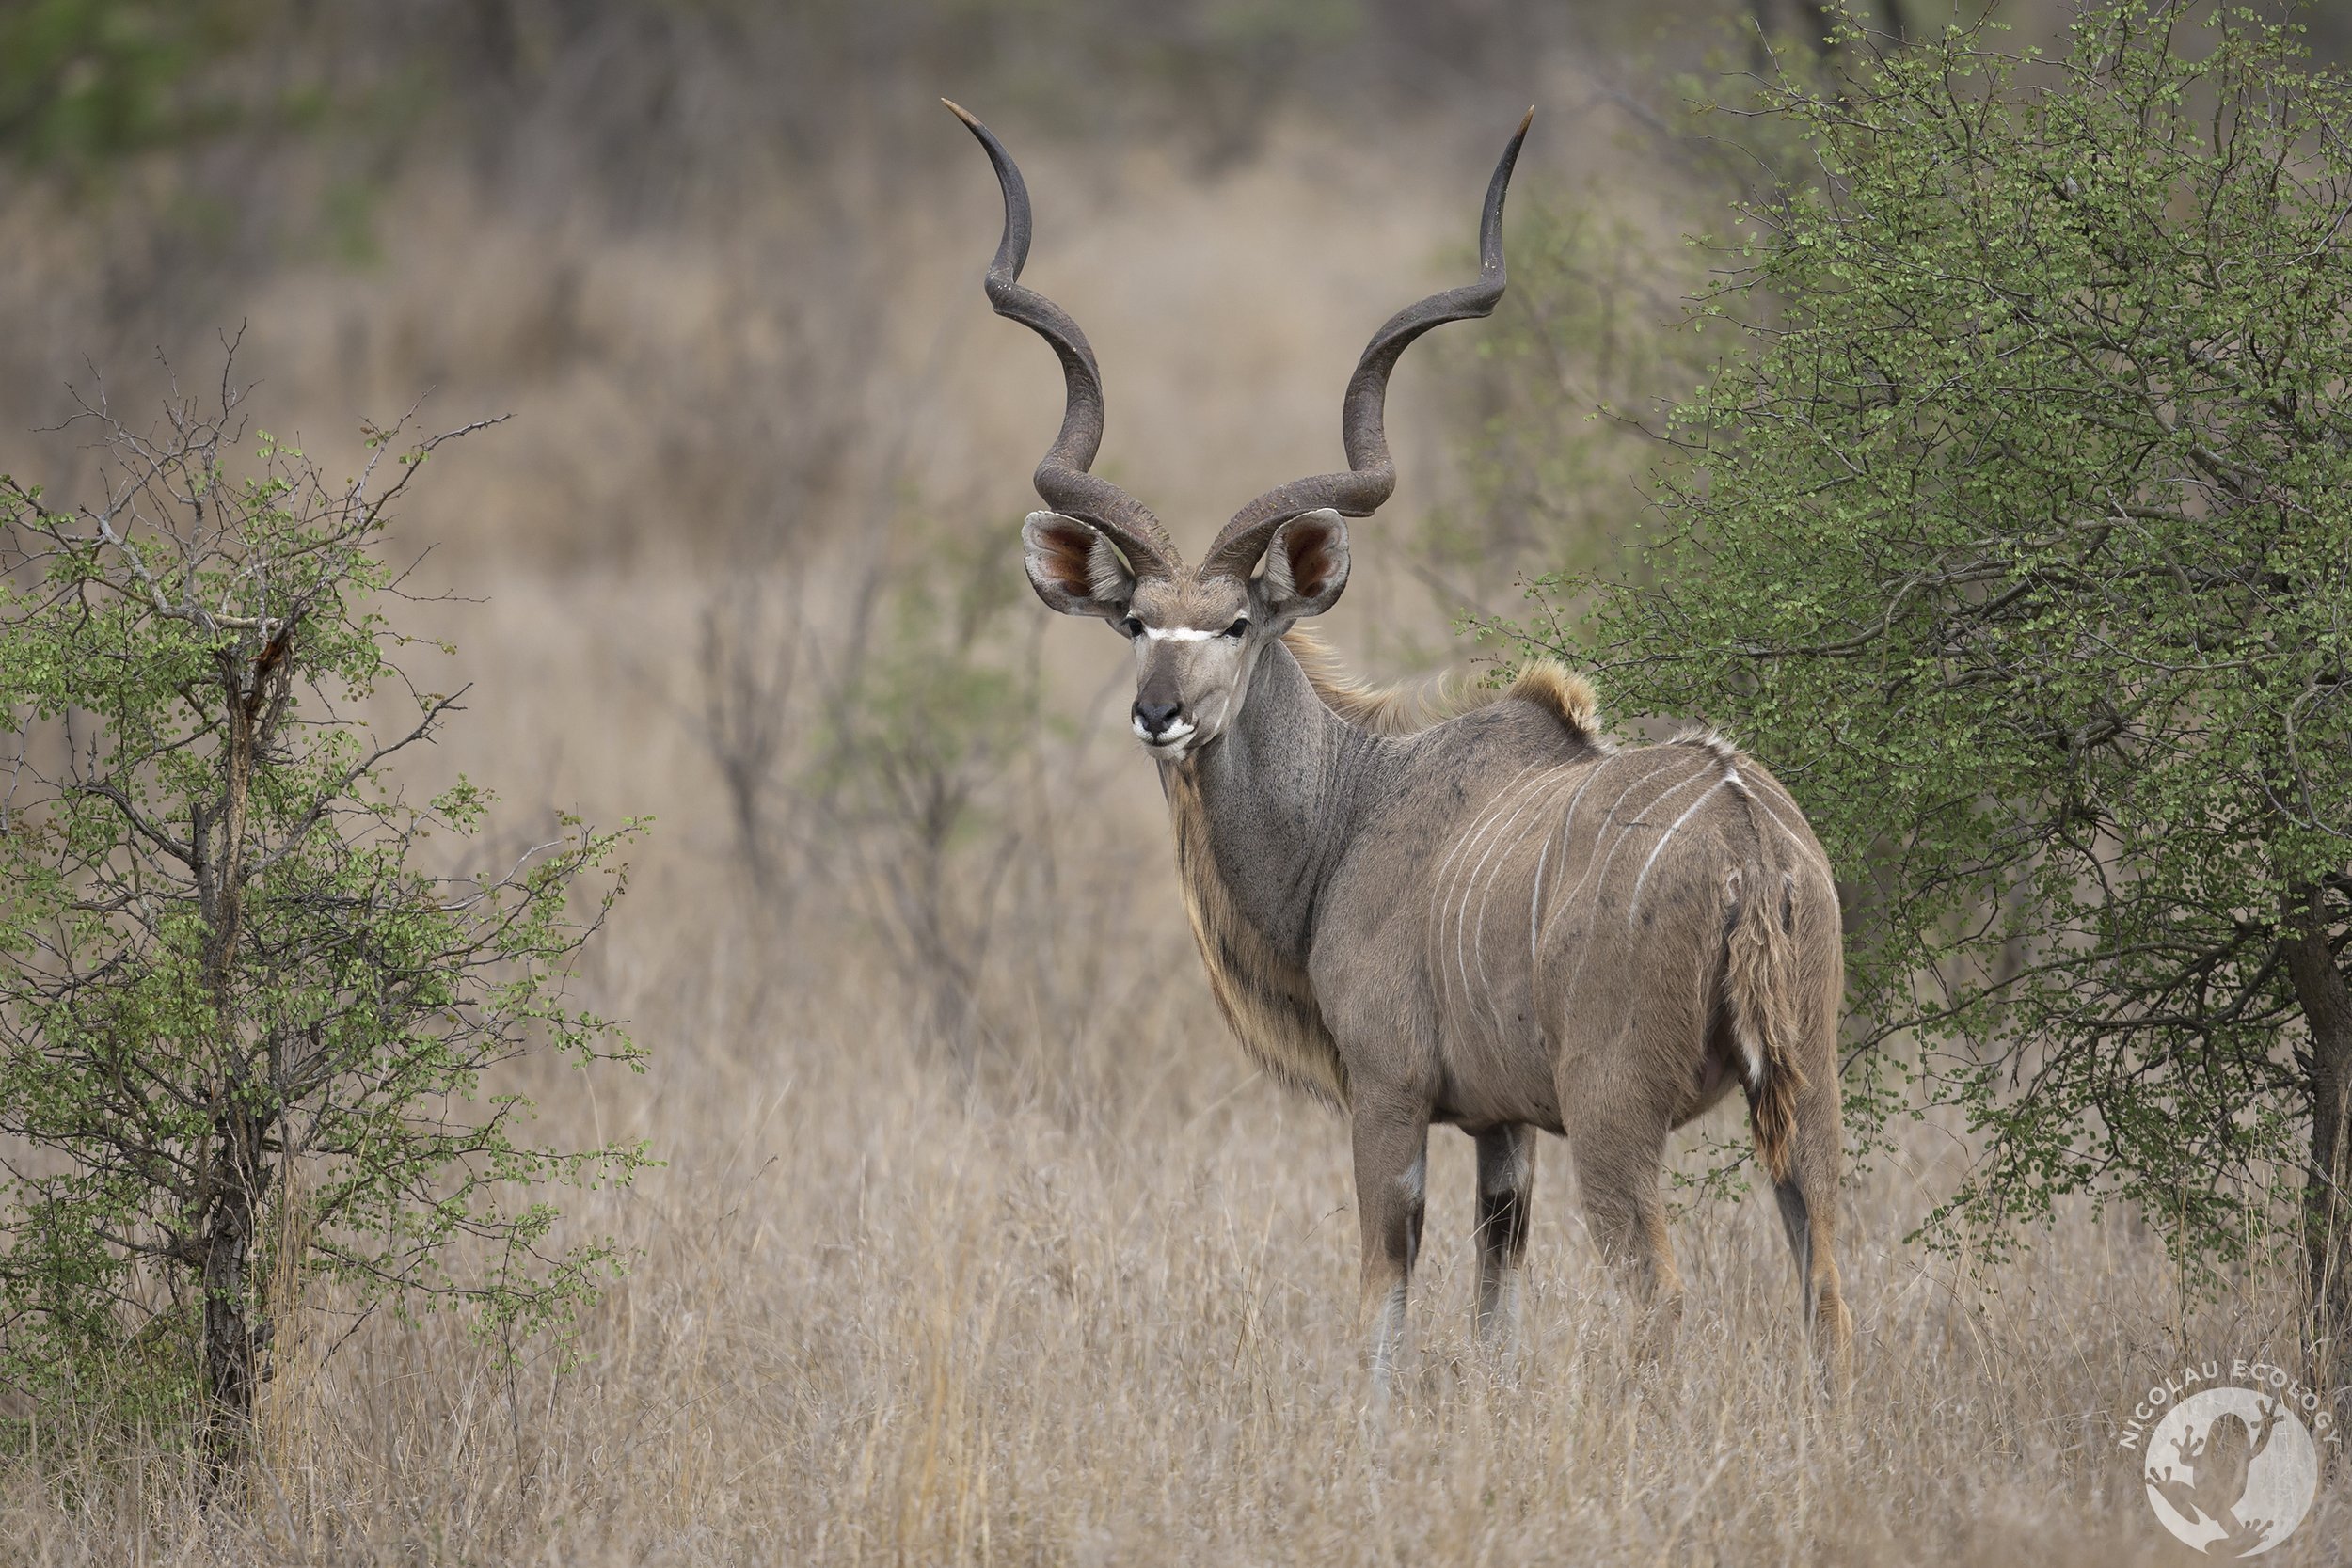 Tragelaphus strepsiceros - Greater kudu